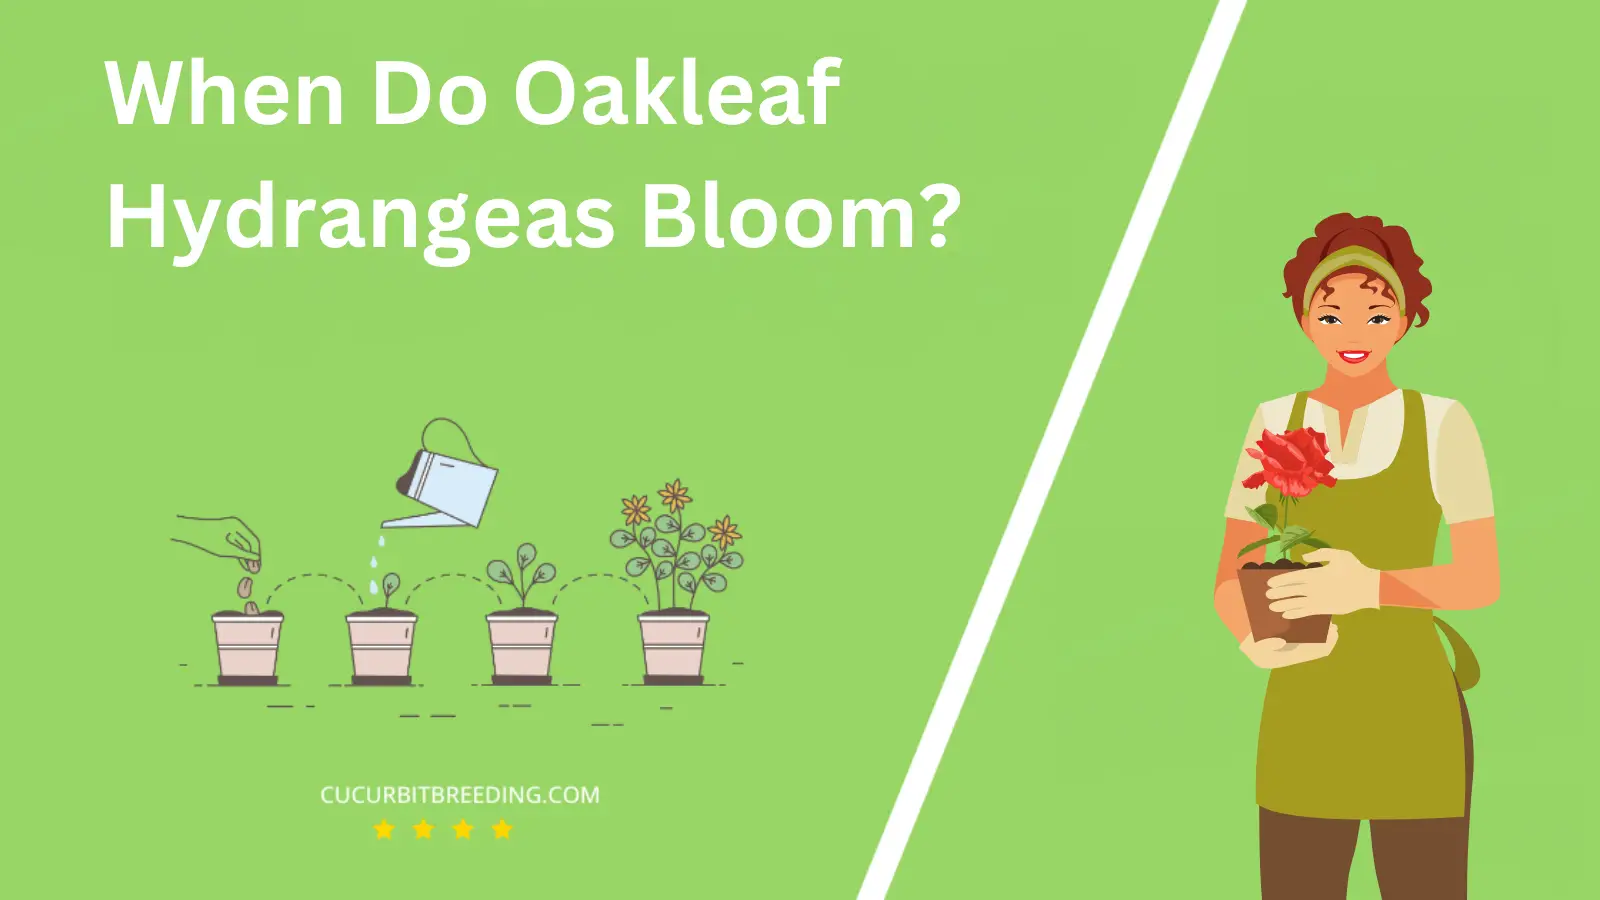 When Do Oakleaf Hydrangeas Bloom?